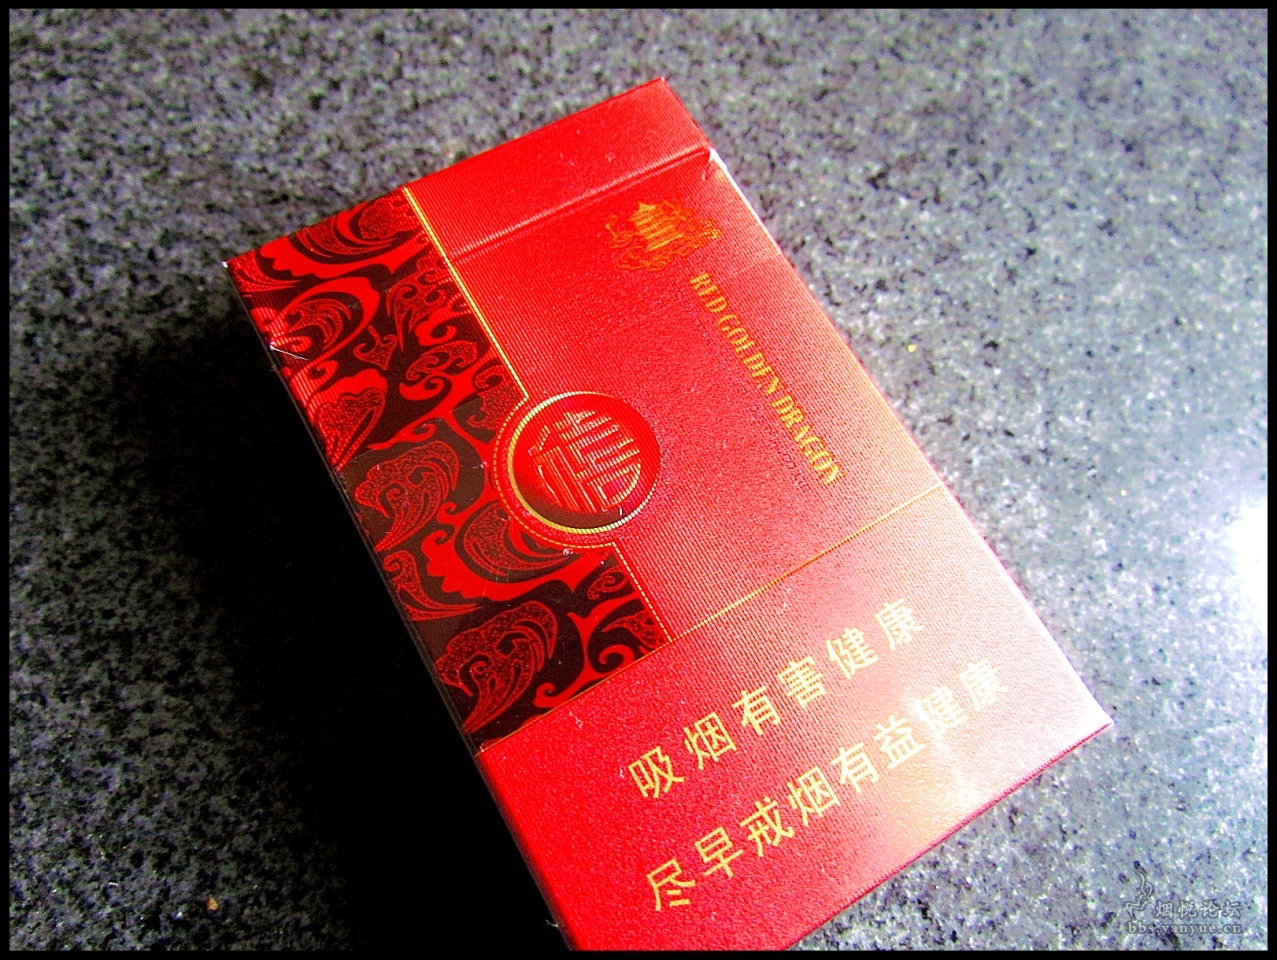 红金龙——新版-价格:5元-se72190002-烟标/烟盒-零售-7788收藏__收藏热线